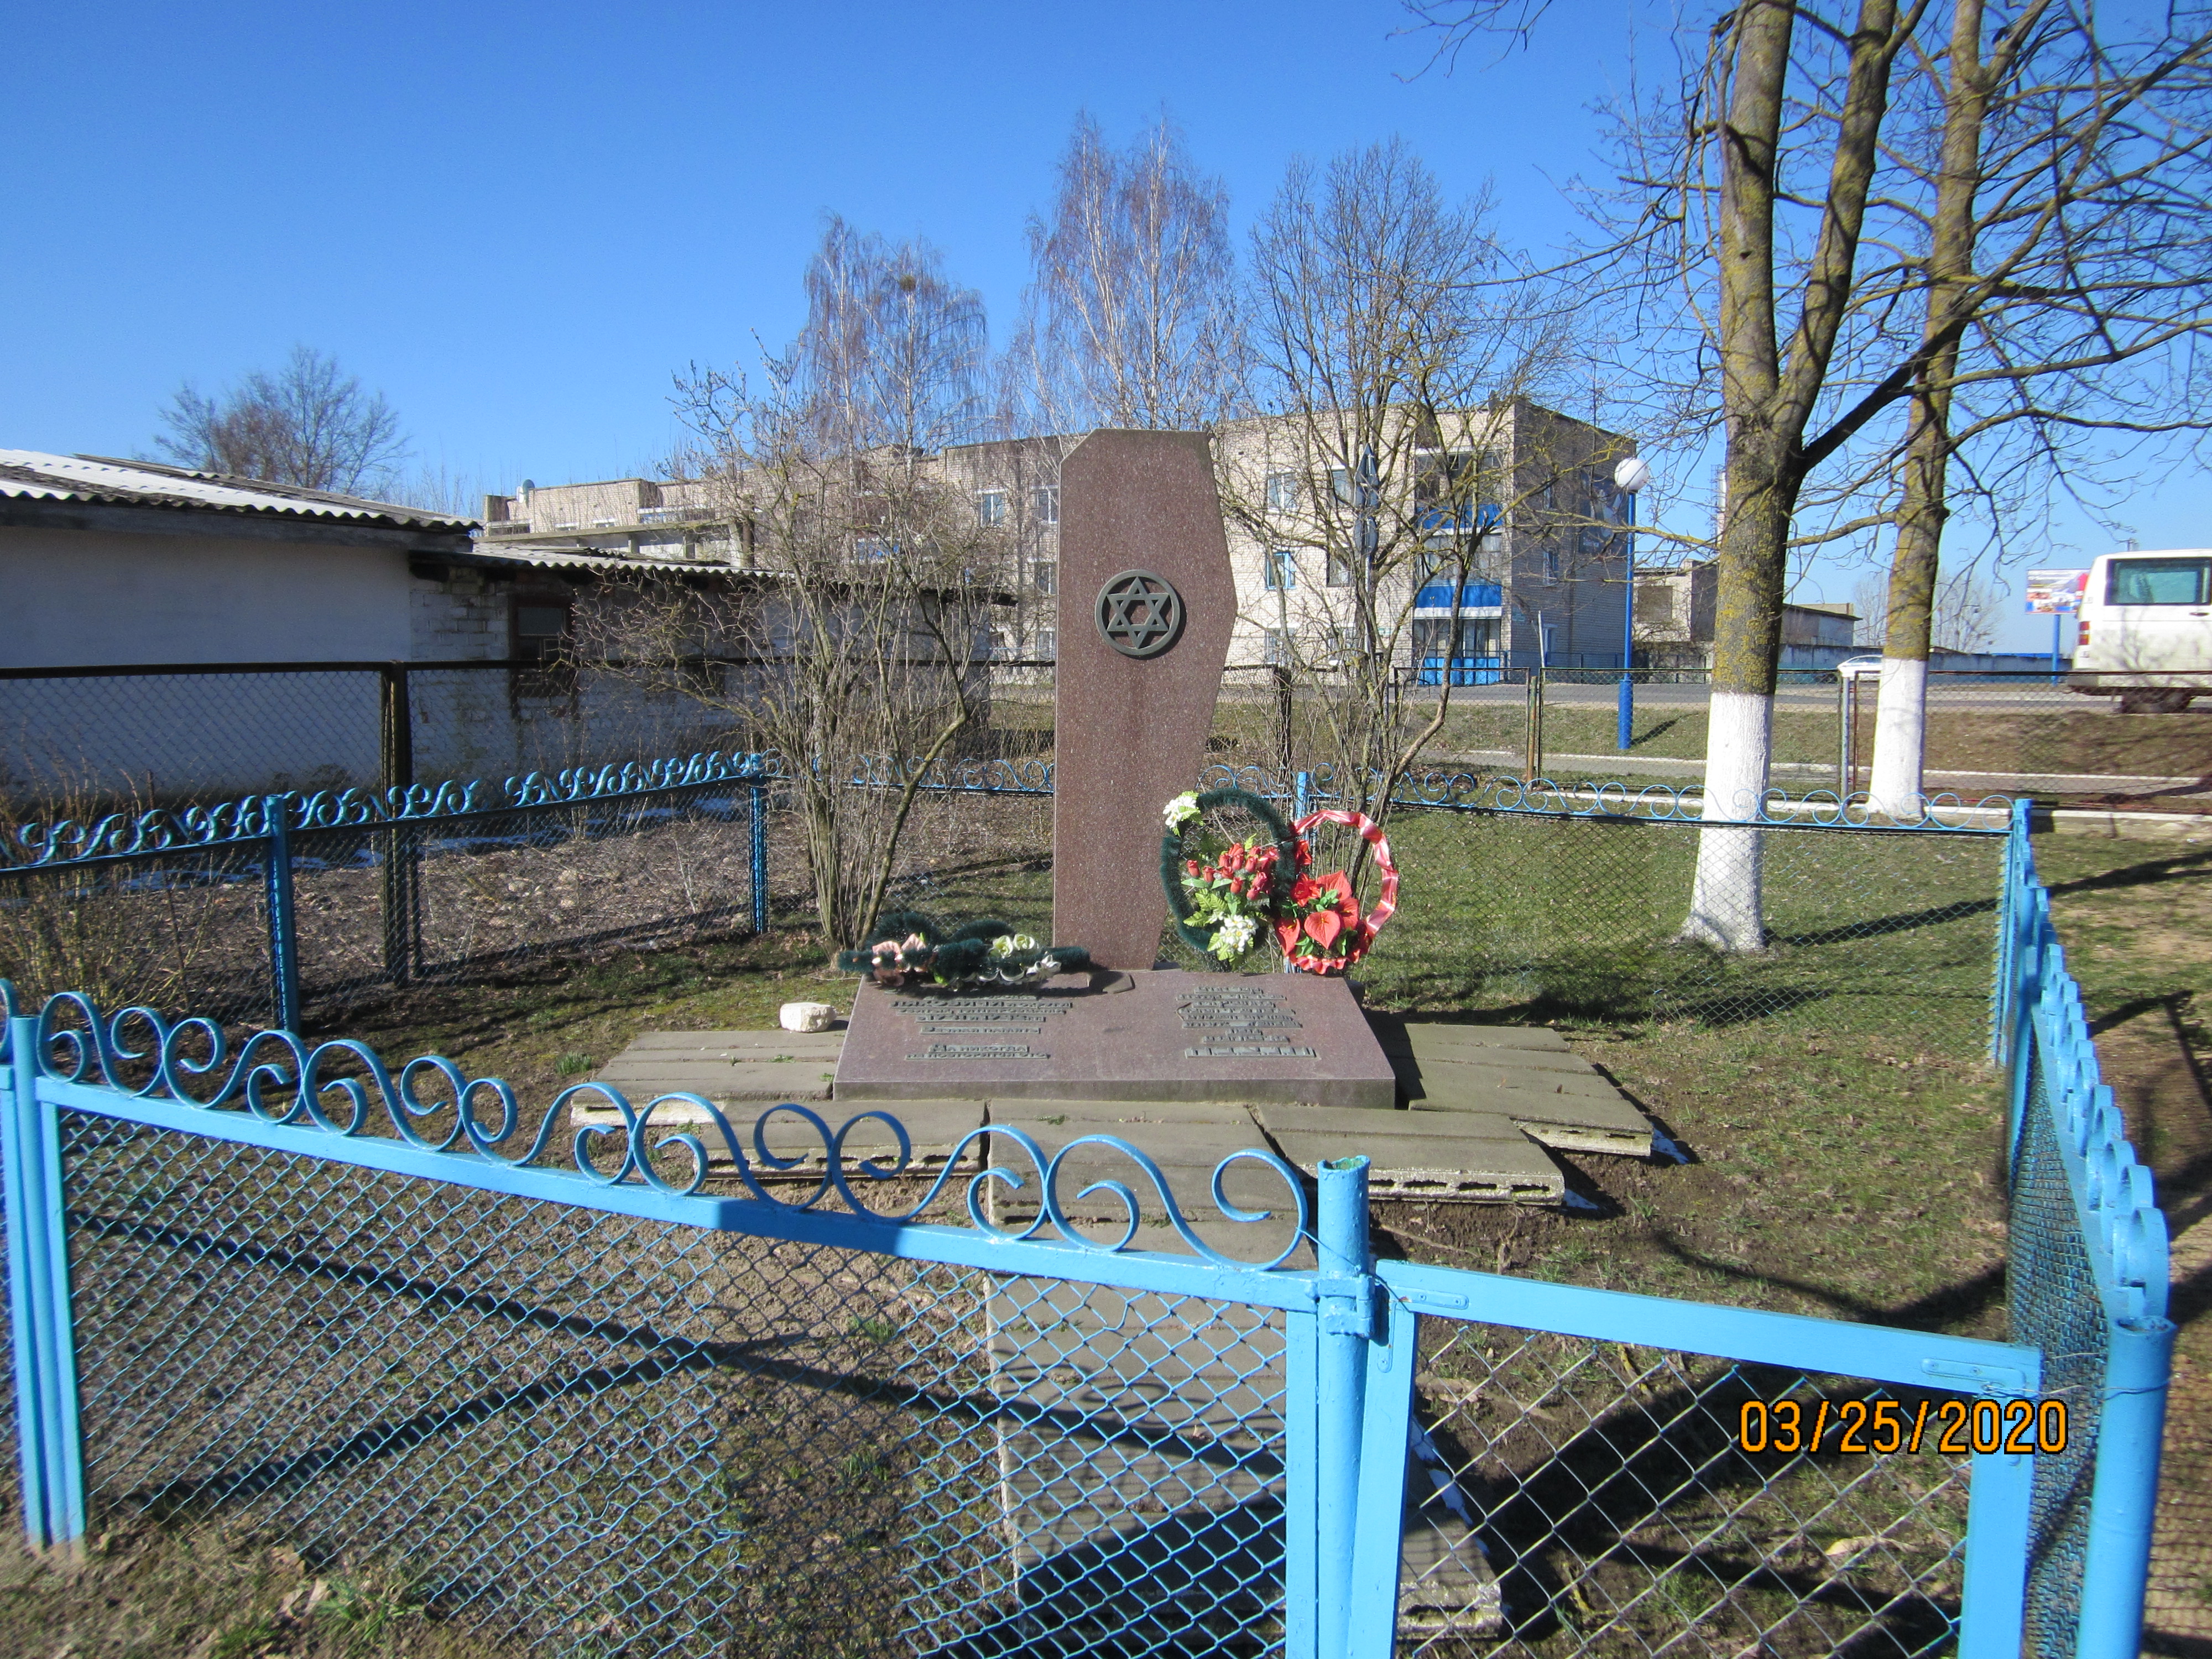 Монумент На месте массового захоронения жертв войны, расположенная в г. Ляховичи, Ляховичский район, Брестская область